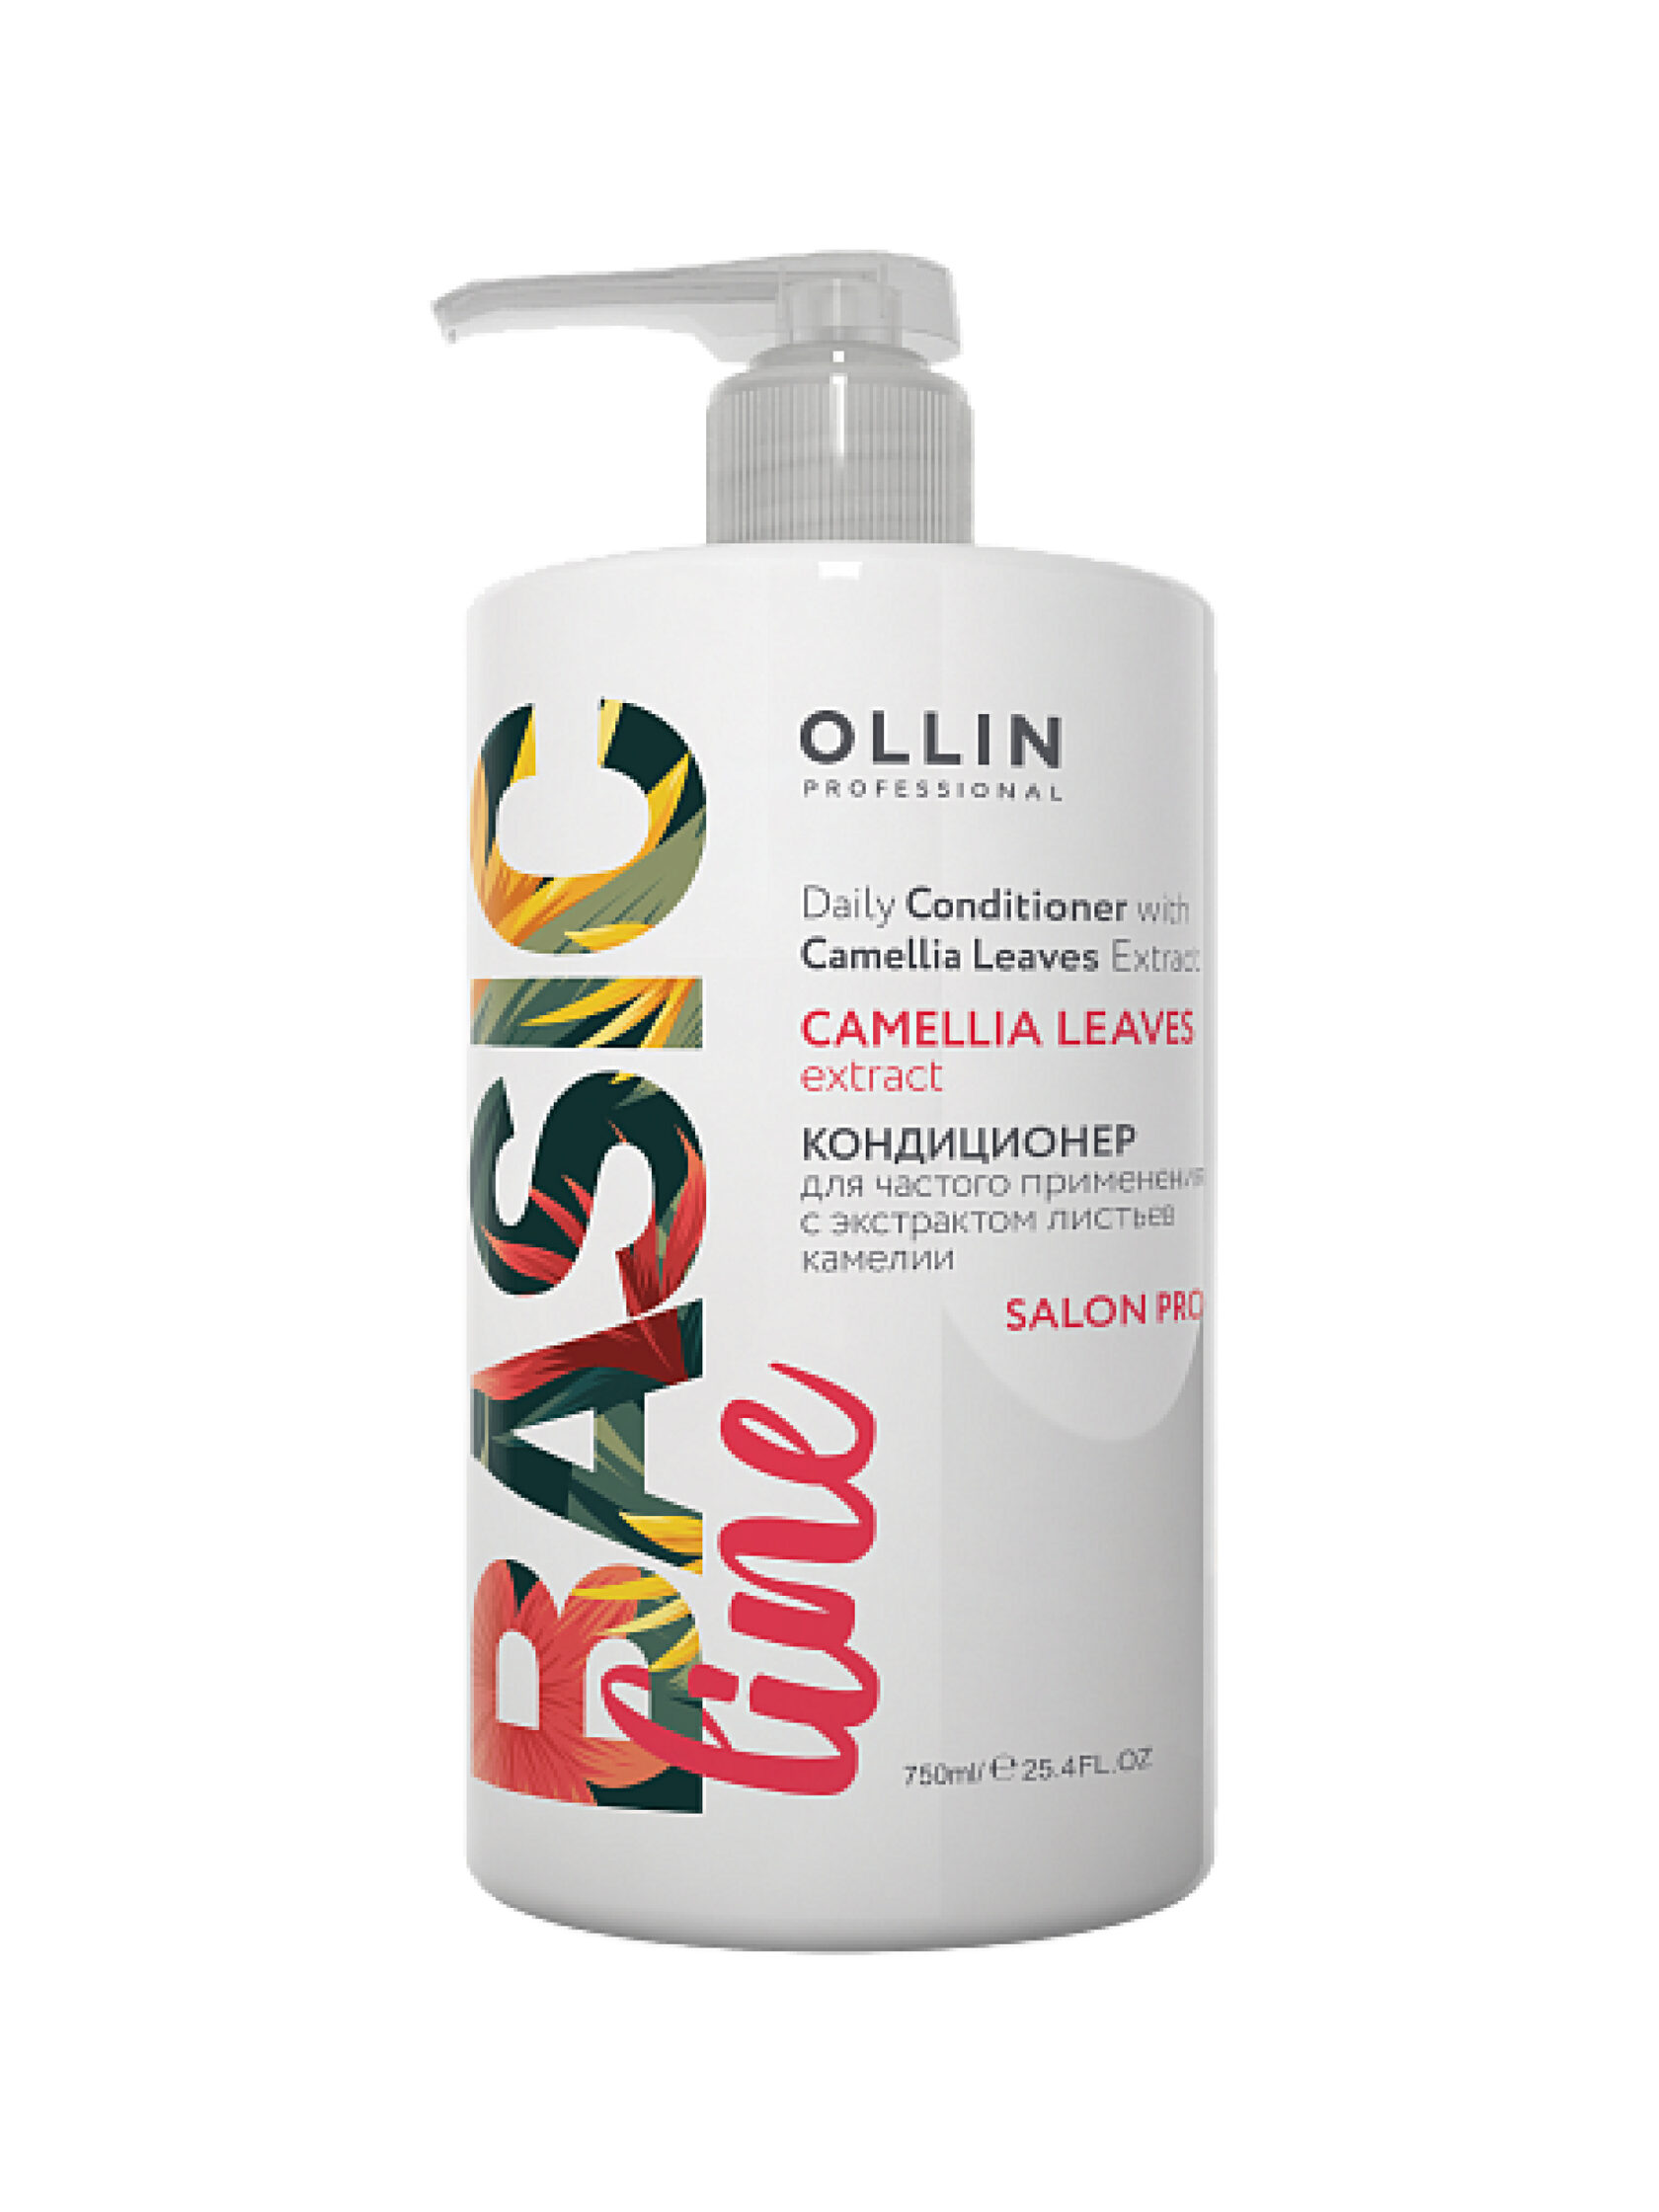 Кондиционер Ollin Professional для частого применения с экстрактом листьев камелии, 750мл кондиционер indigo витаминный салонный для частого применения 200 мл